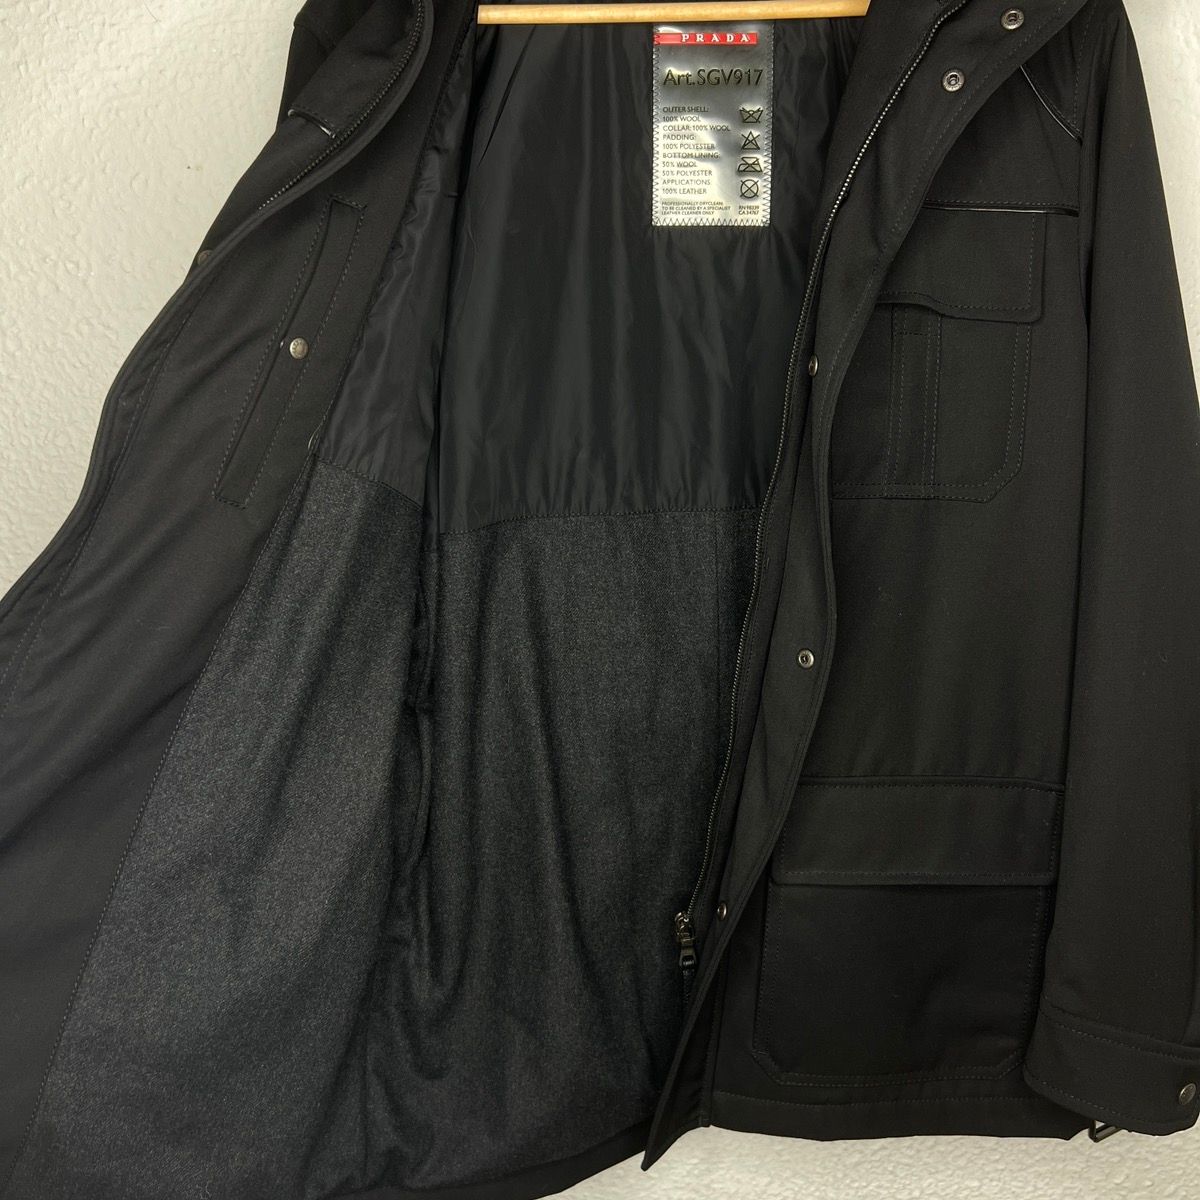 Prada Prada Milano Military Jacket Belted Coat Black Wool Designer Size US M / EU 48-50 / 2 - 9 Thumbnail